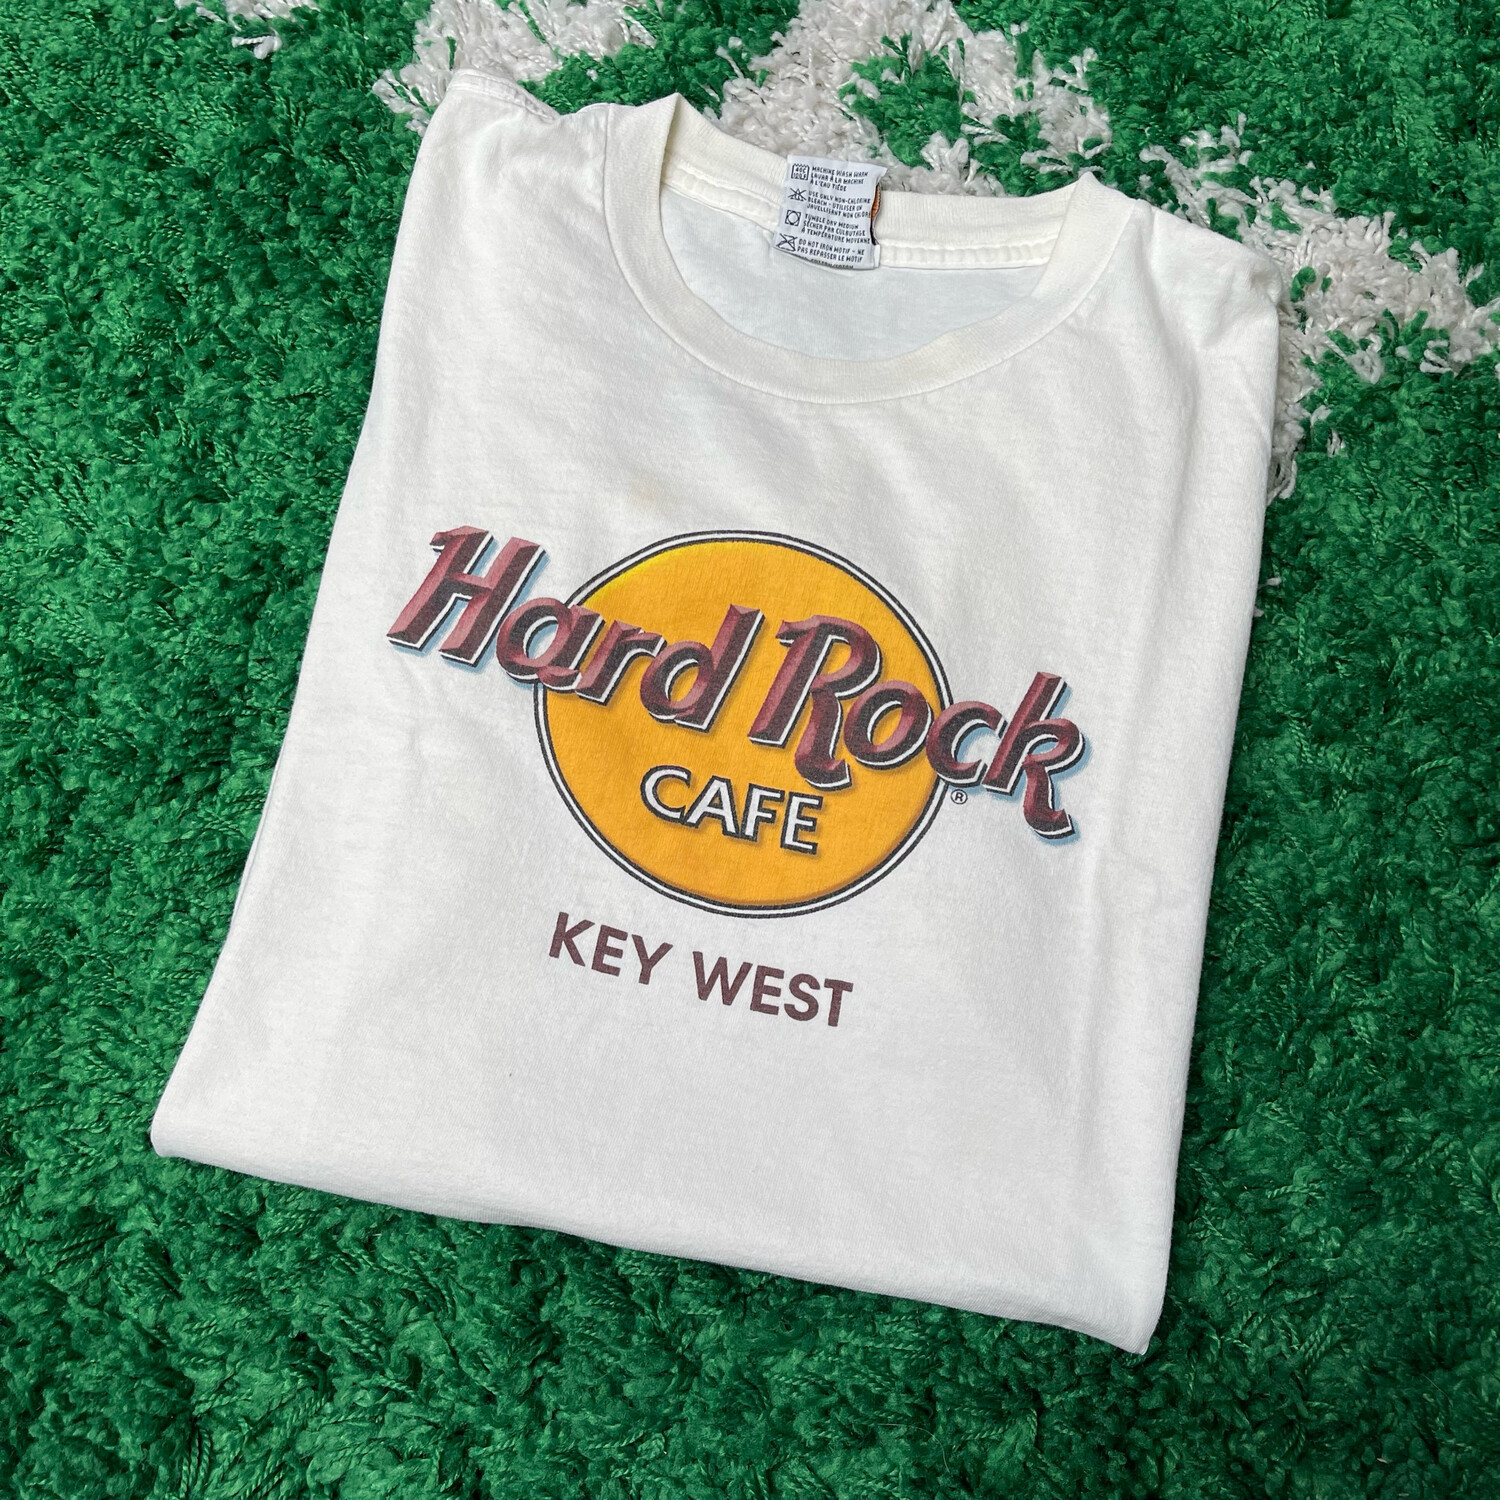 Hard Rock Cafe Key West Tee Size Large